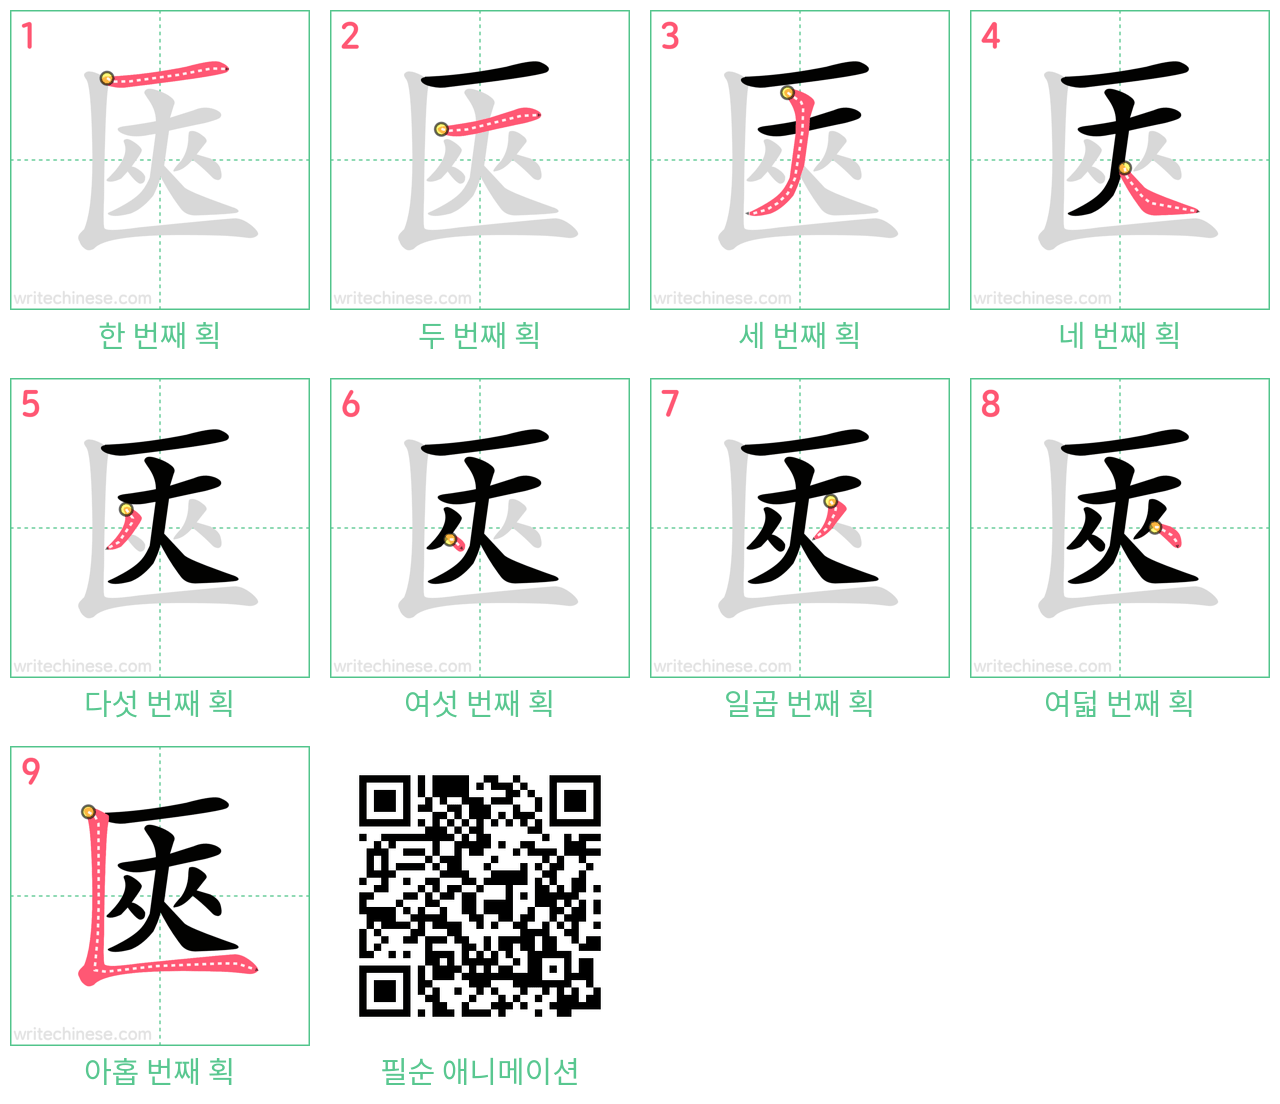 匧 step-by-step stroke order diagrams